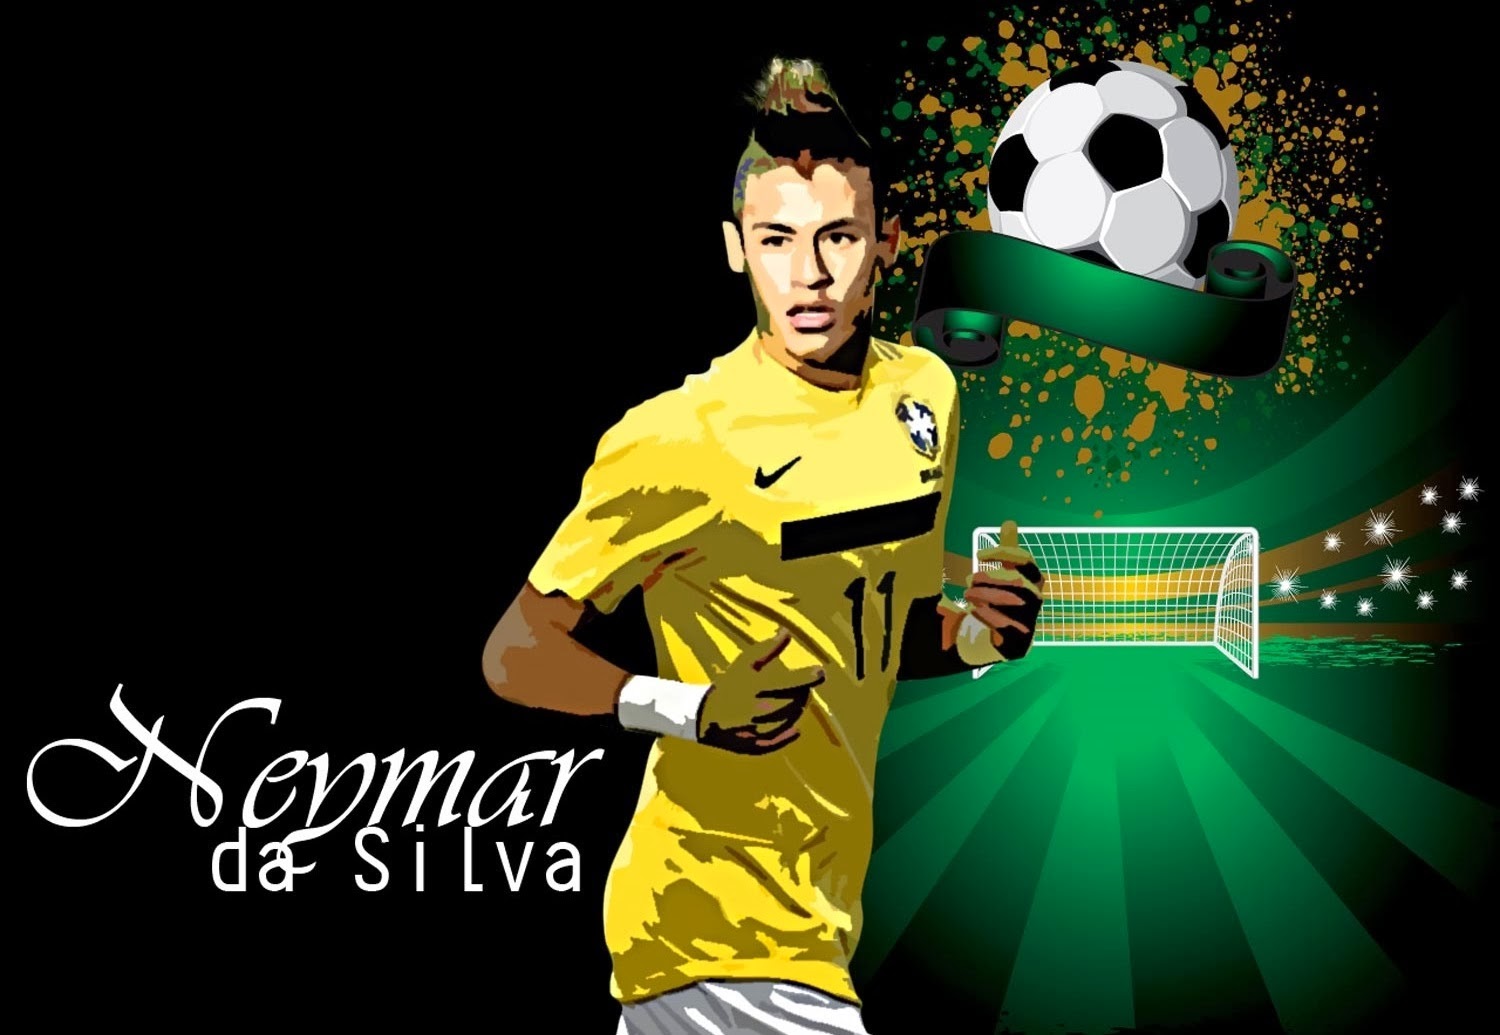 ALL SPORTS PLAYERS: Neymar Jr hd Wallpapers 20141500 x 1035